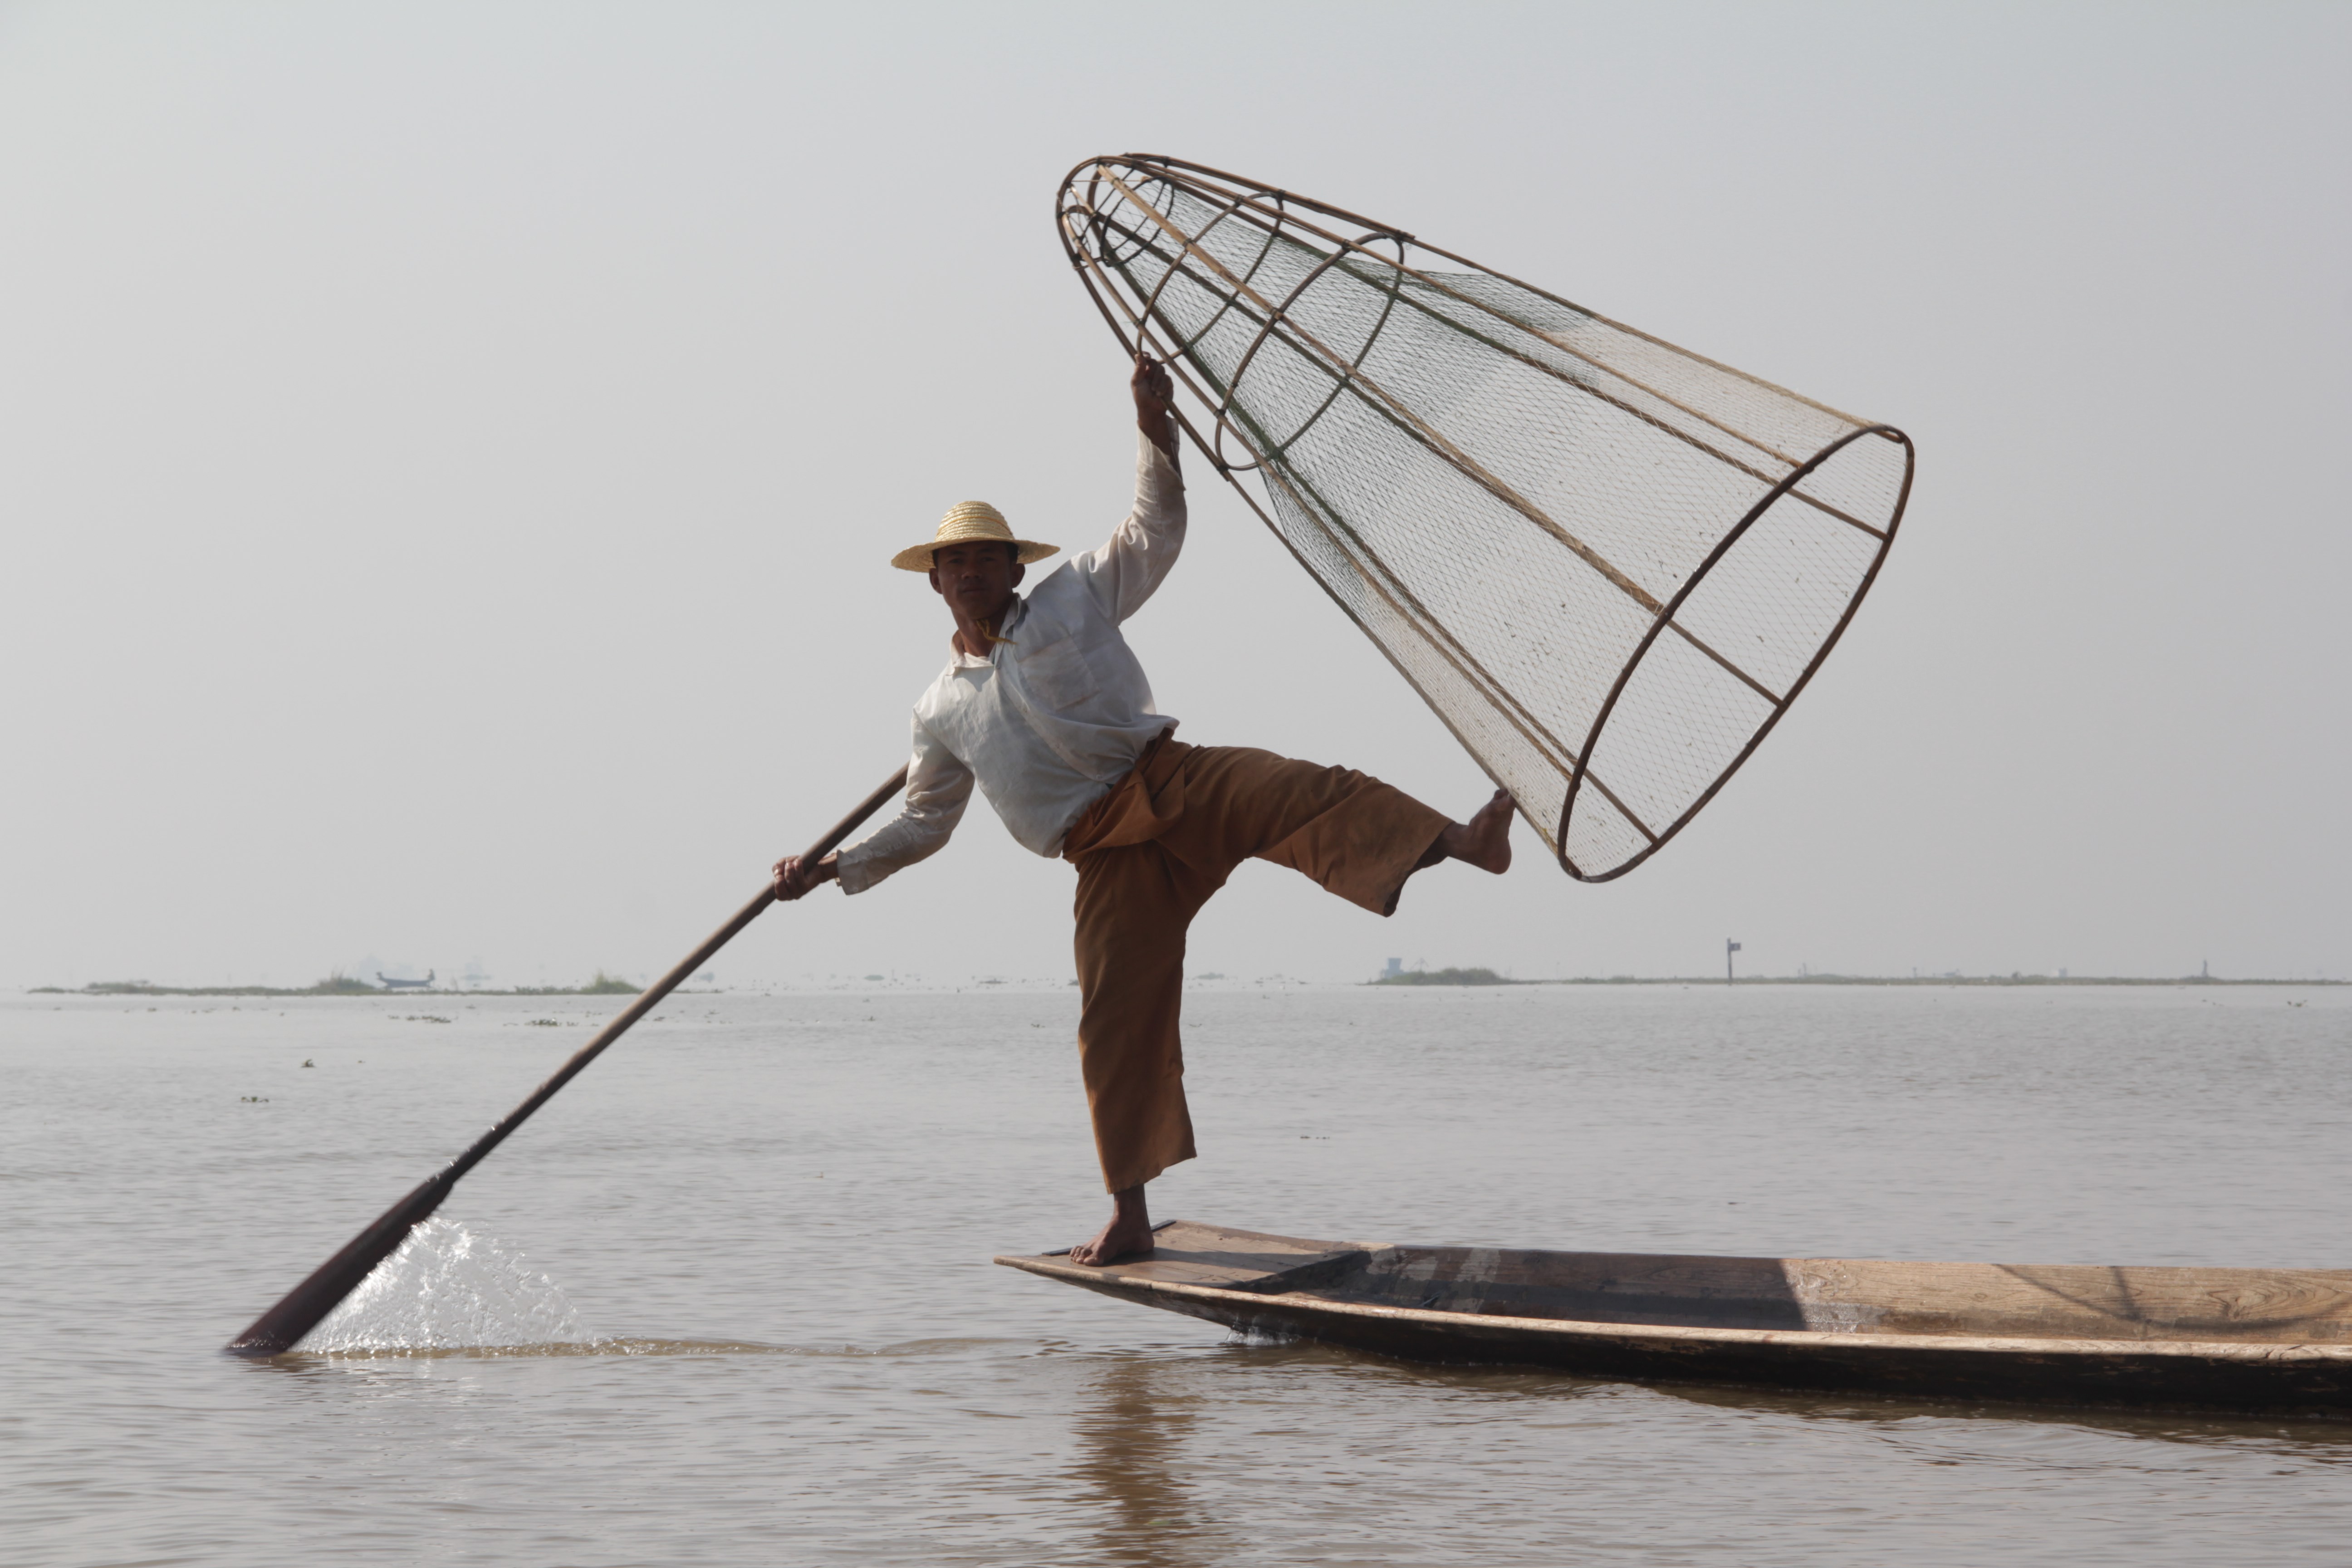 Pagaie au pied pour se diriger et filet à la main, les pêcheurs du lac Inle ont une allure de danseurs professionnels (© Jérôme Decoster).